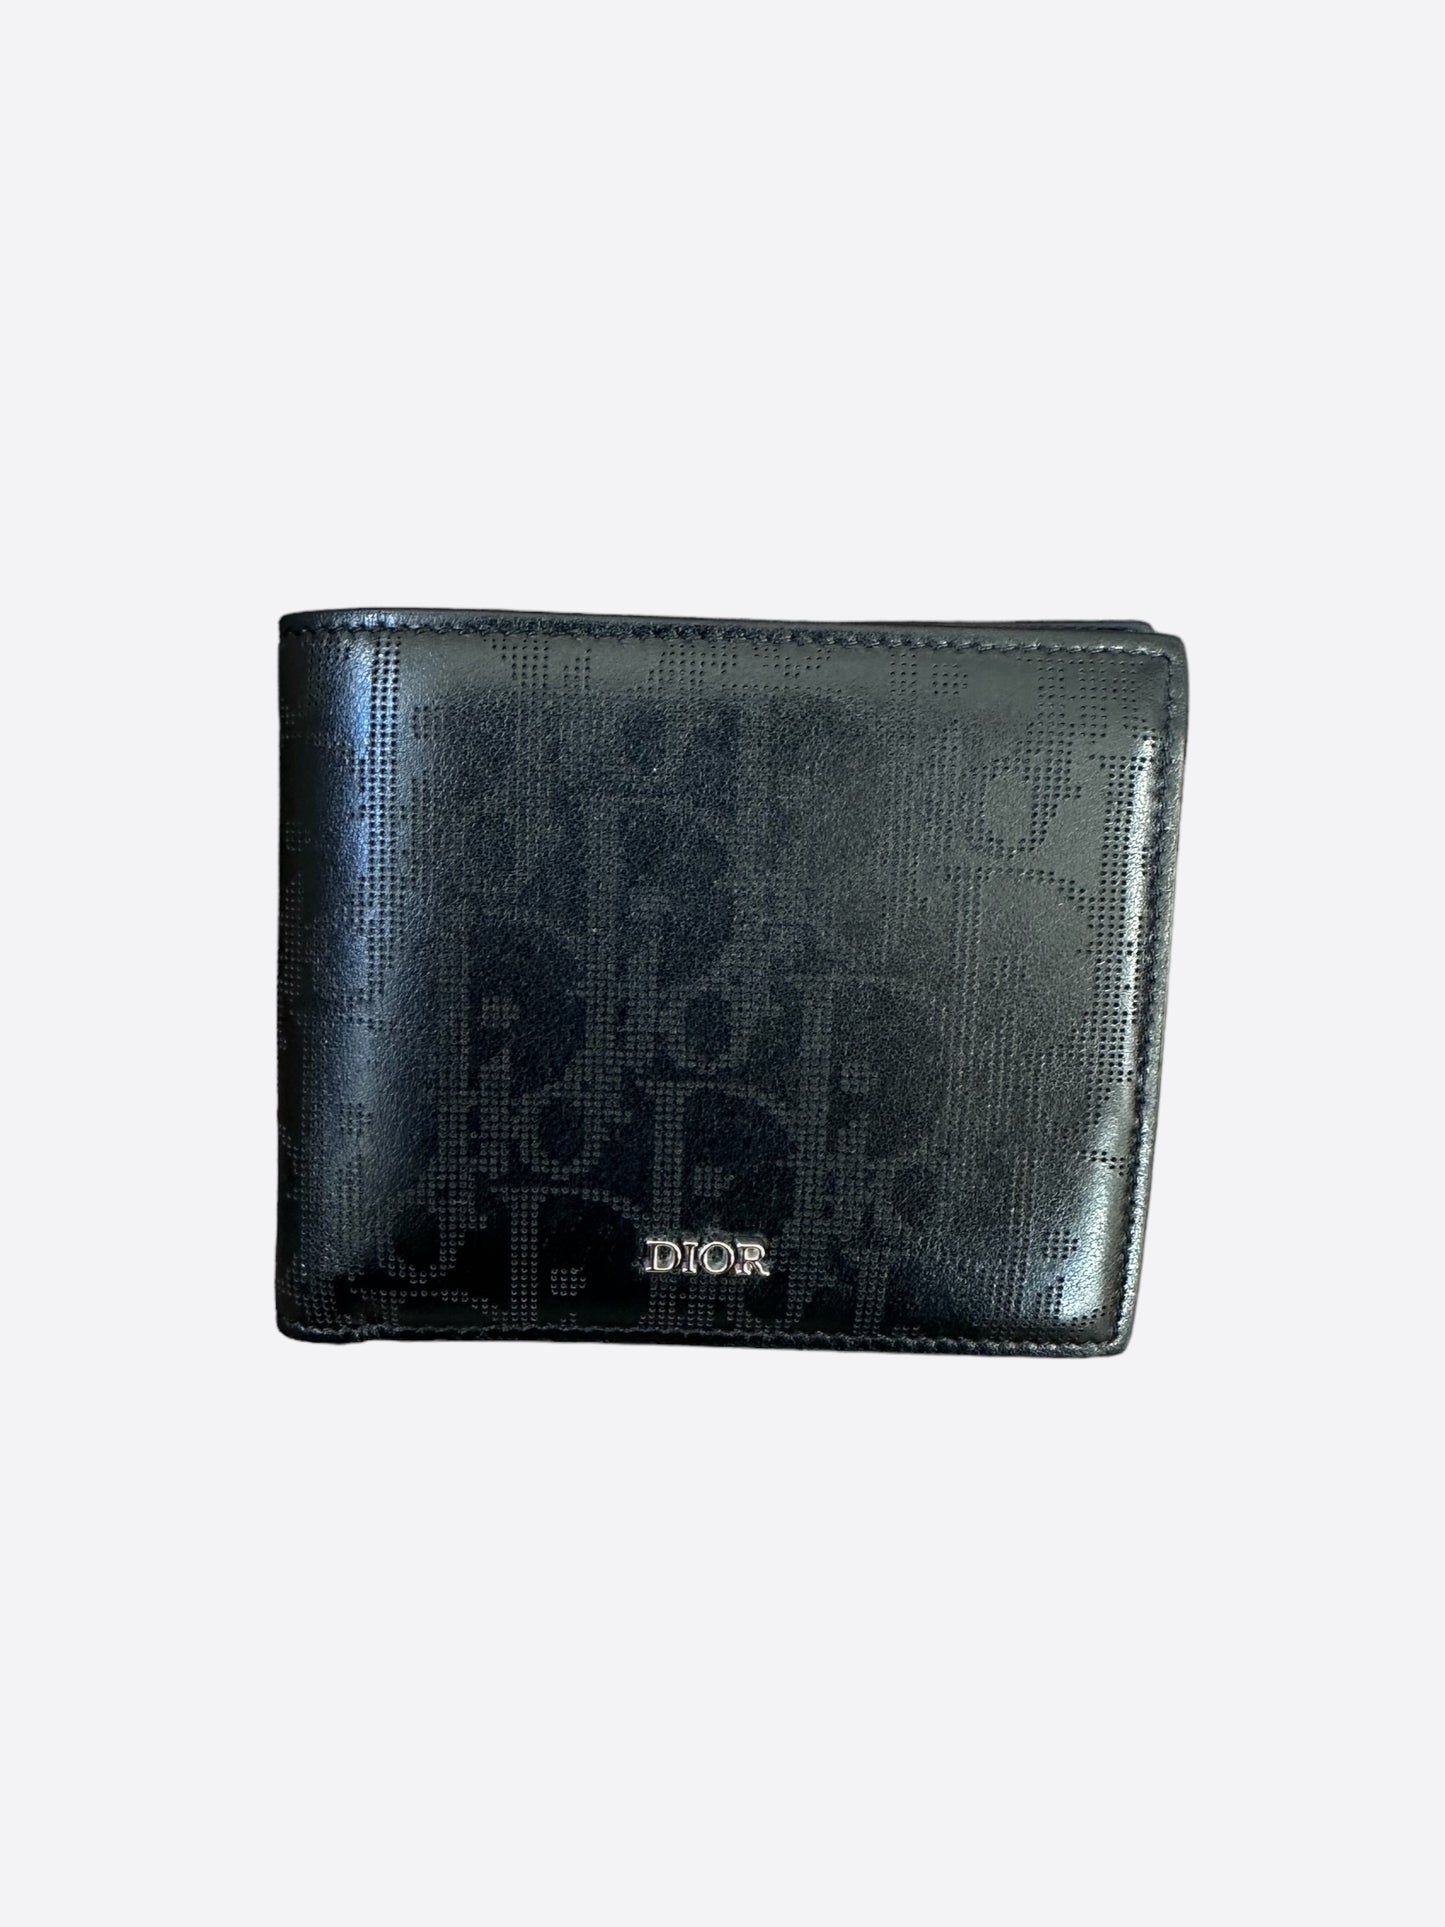 Dior Men's Oblique Galaxy Leather Compact Wallet